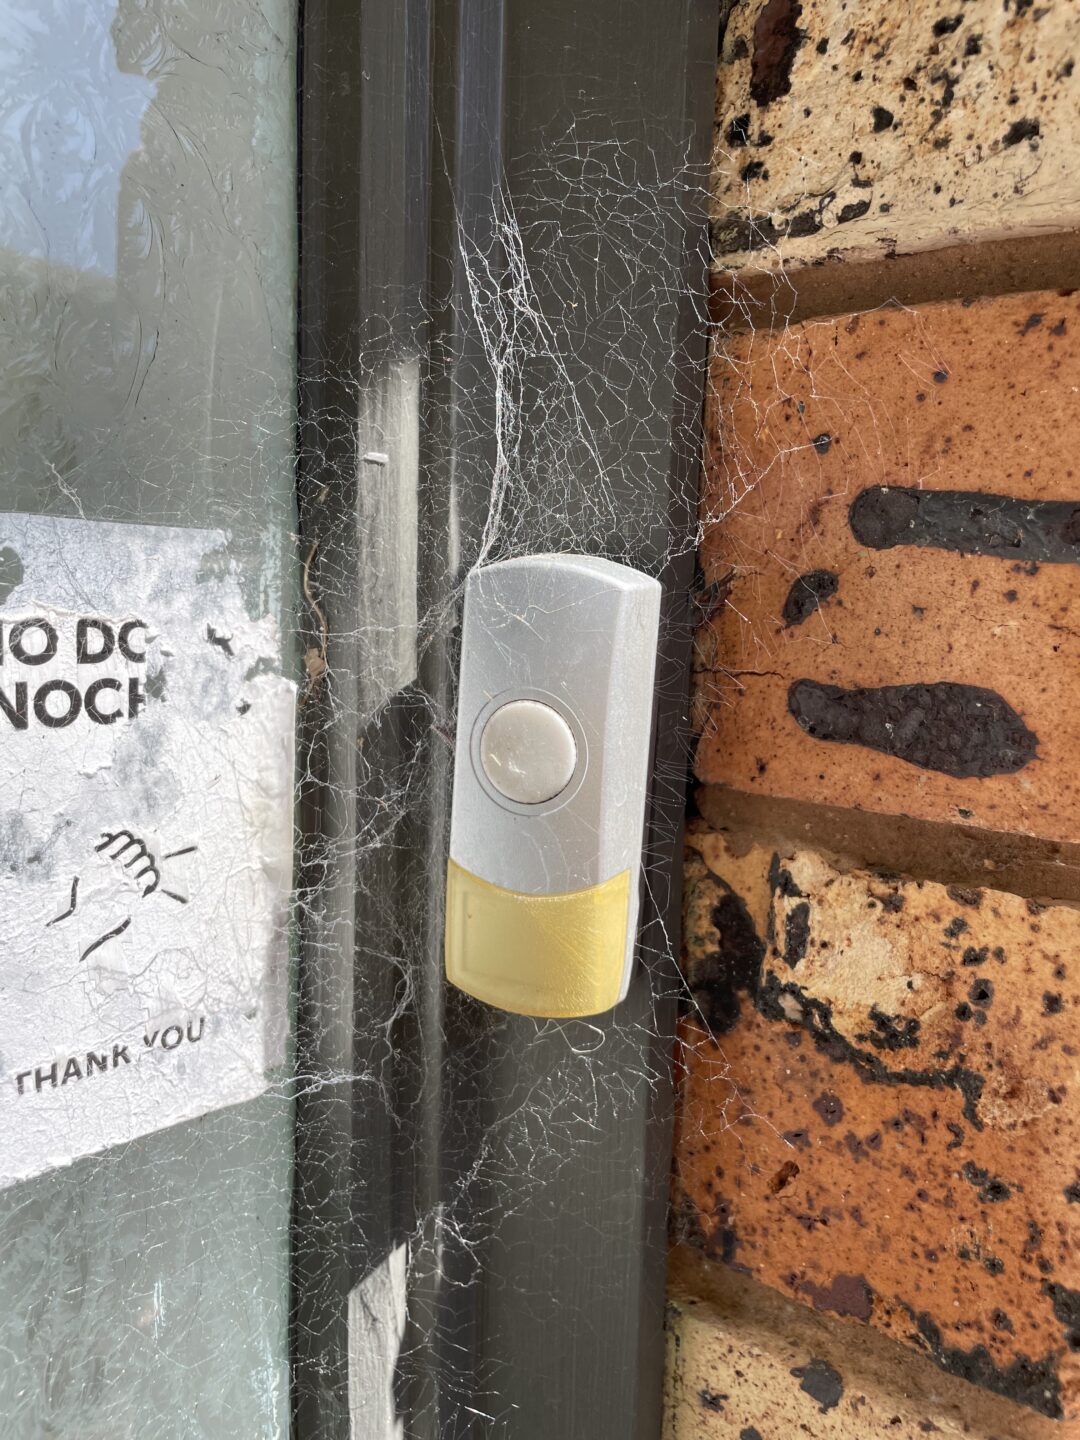 Doorbell with cobwebs surrounding it. 